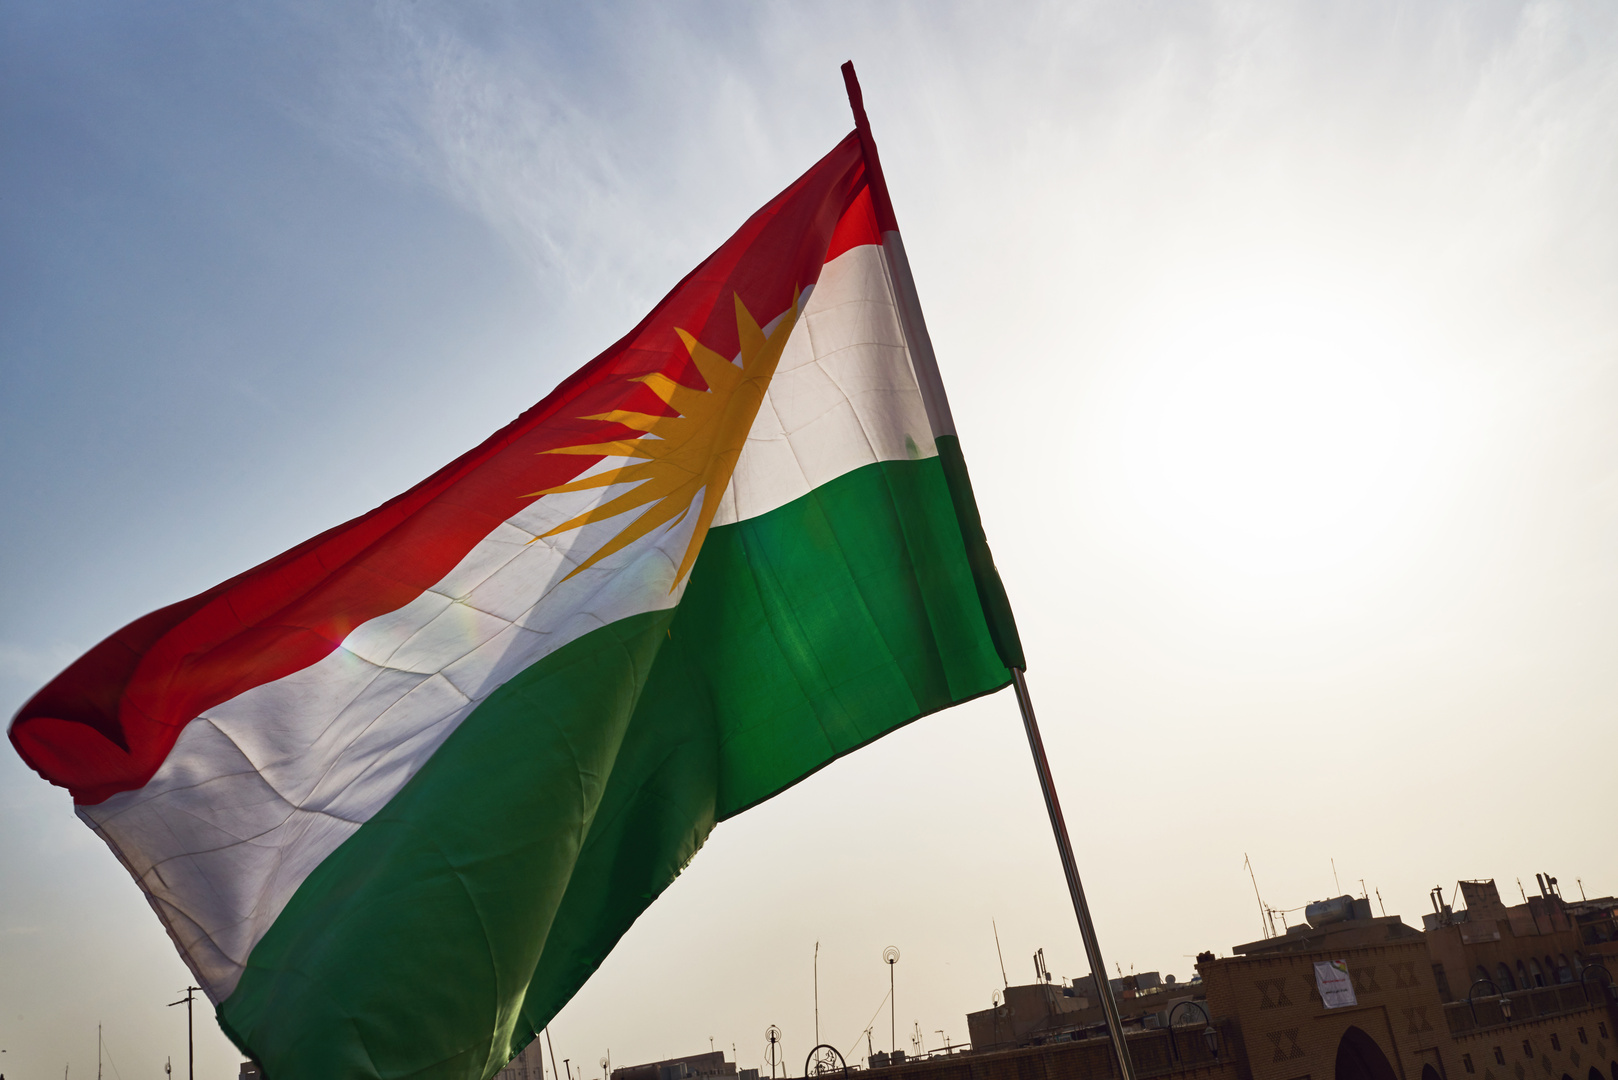 حكومة إقليم كردستان العراق تطالب الحكومة الاتحادية باتخاذ إجراءات فورية لمنع المزيد من الهجمات